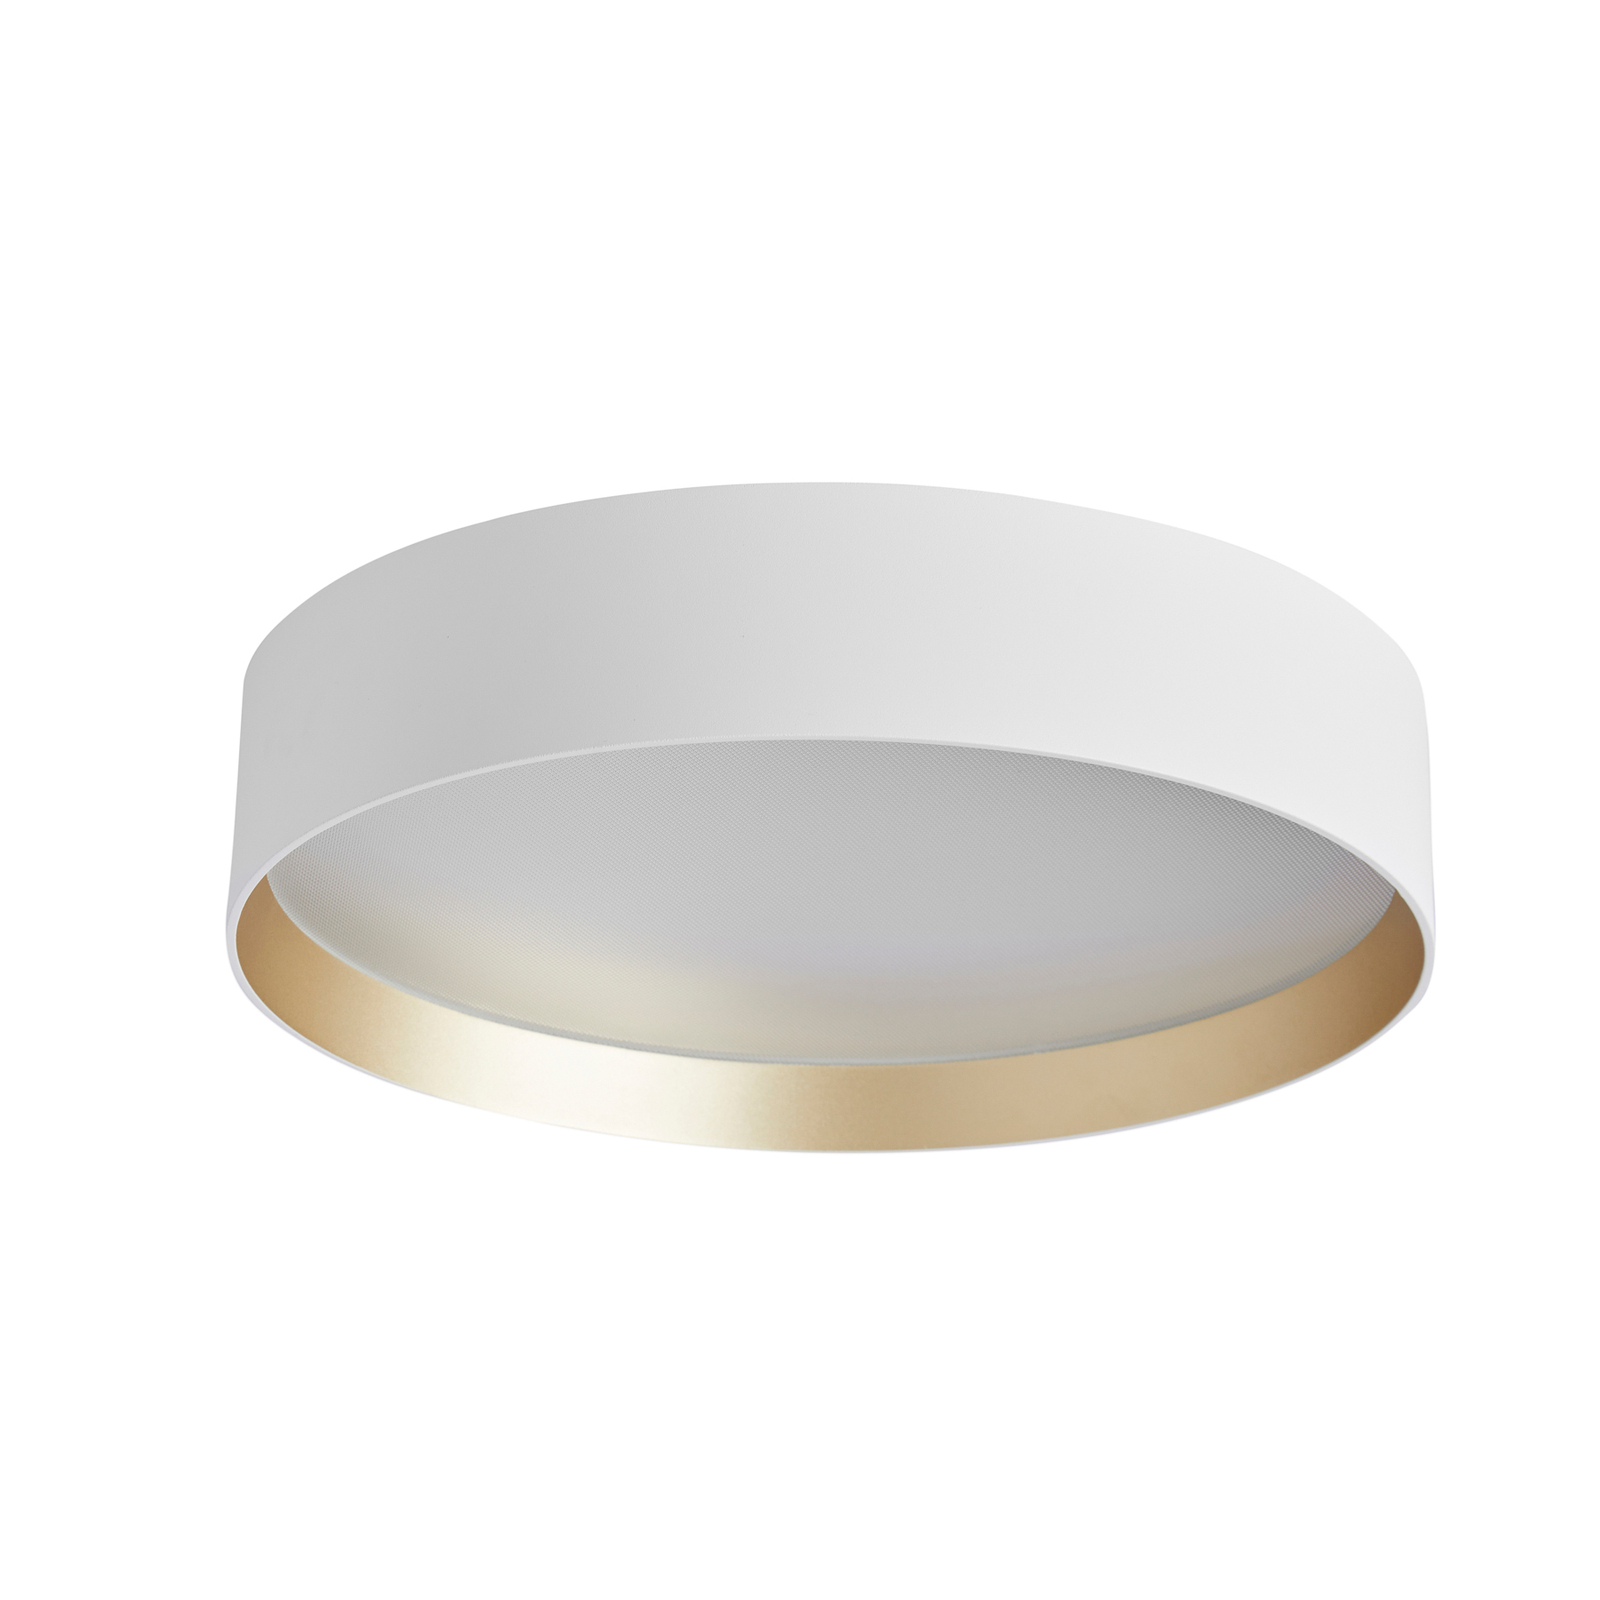 LOOM DESIGN Lucia lampa sufitowa LED Ø35cm biały/złoty